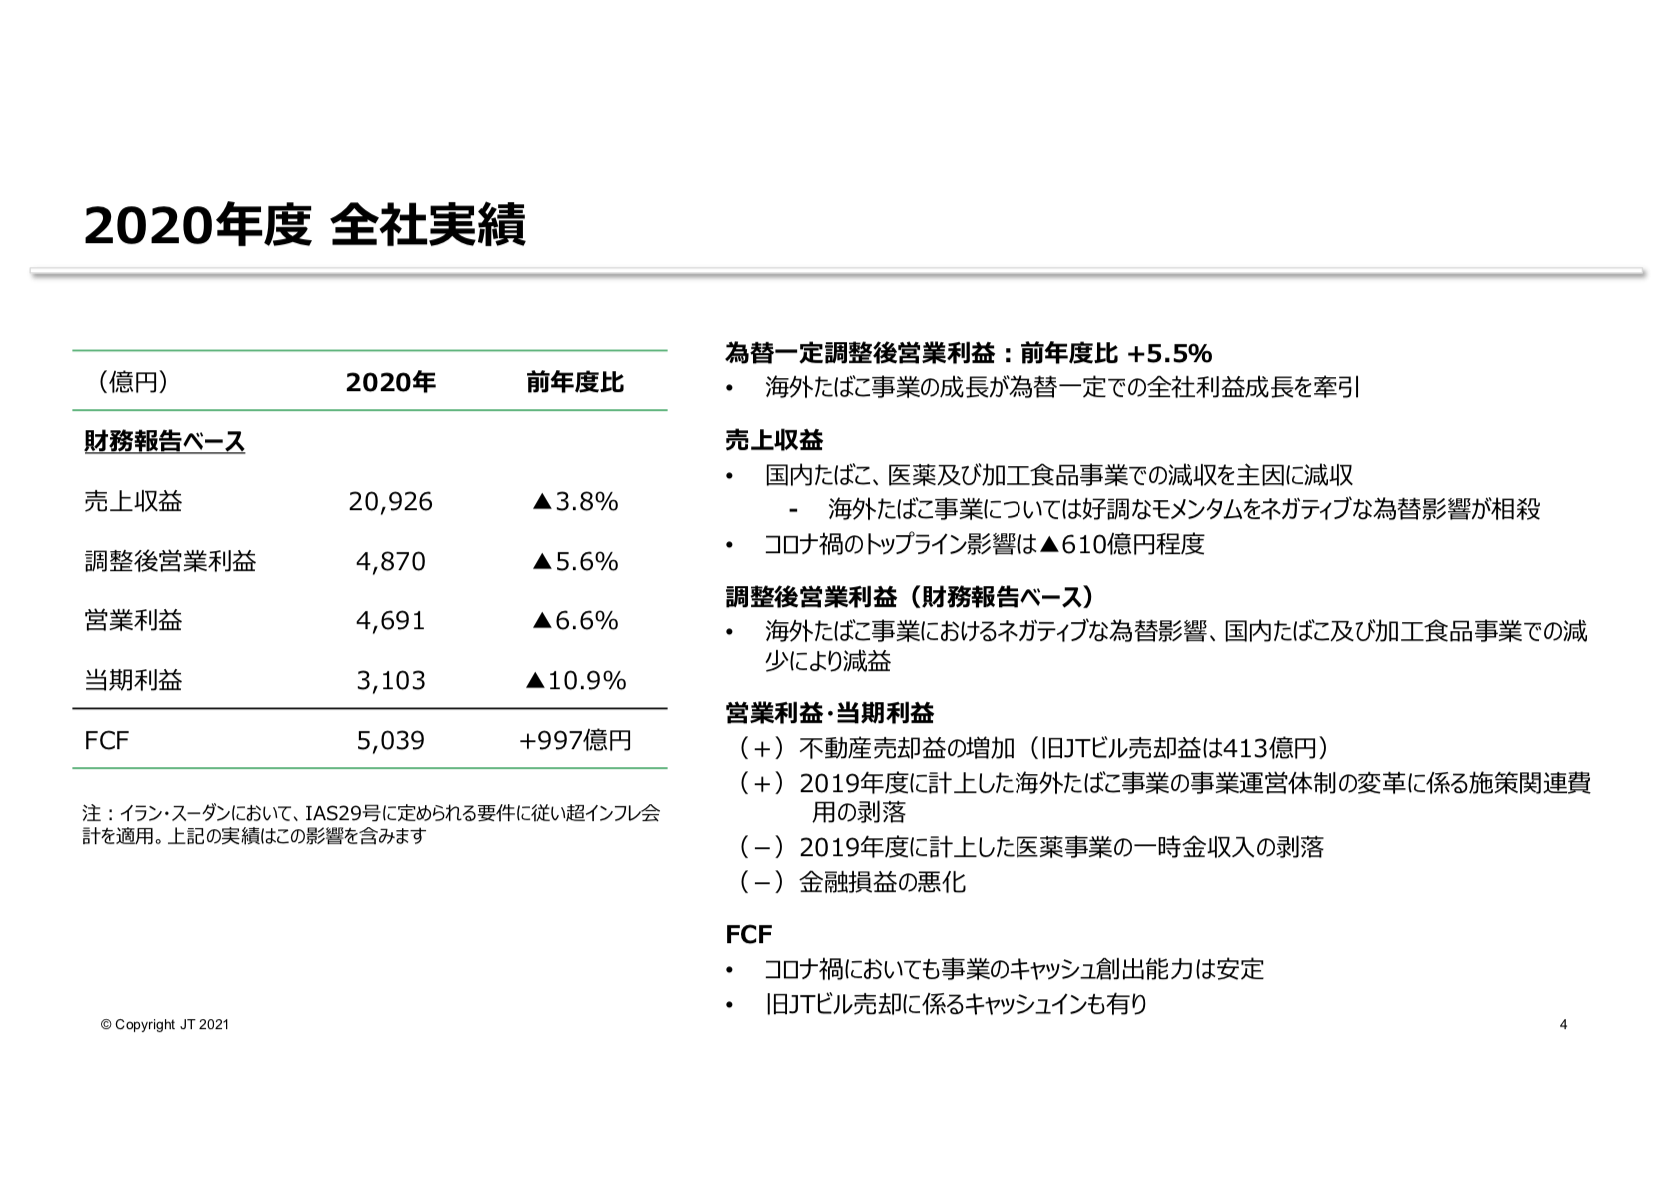 日本たばこ産業株式会社 2020年度 決算説明会資料